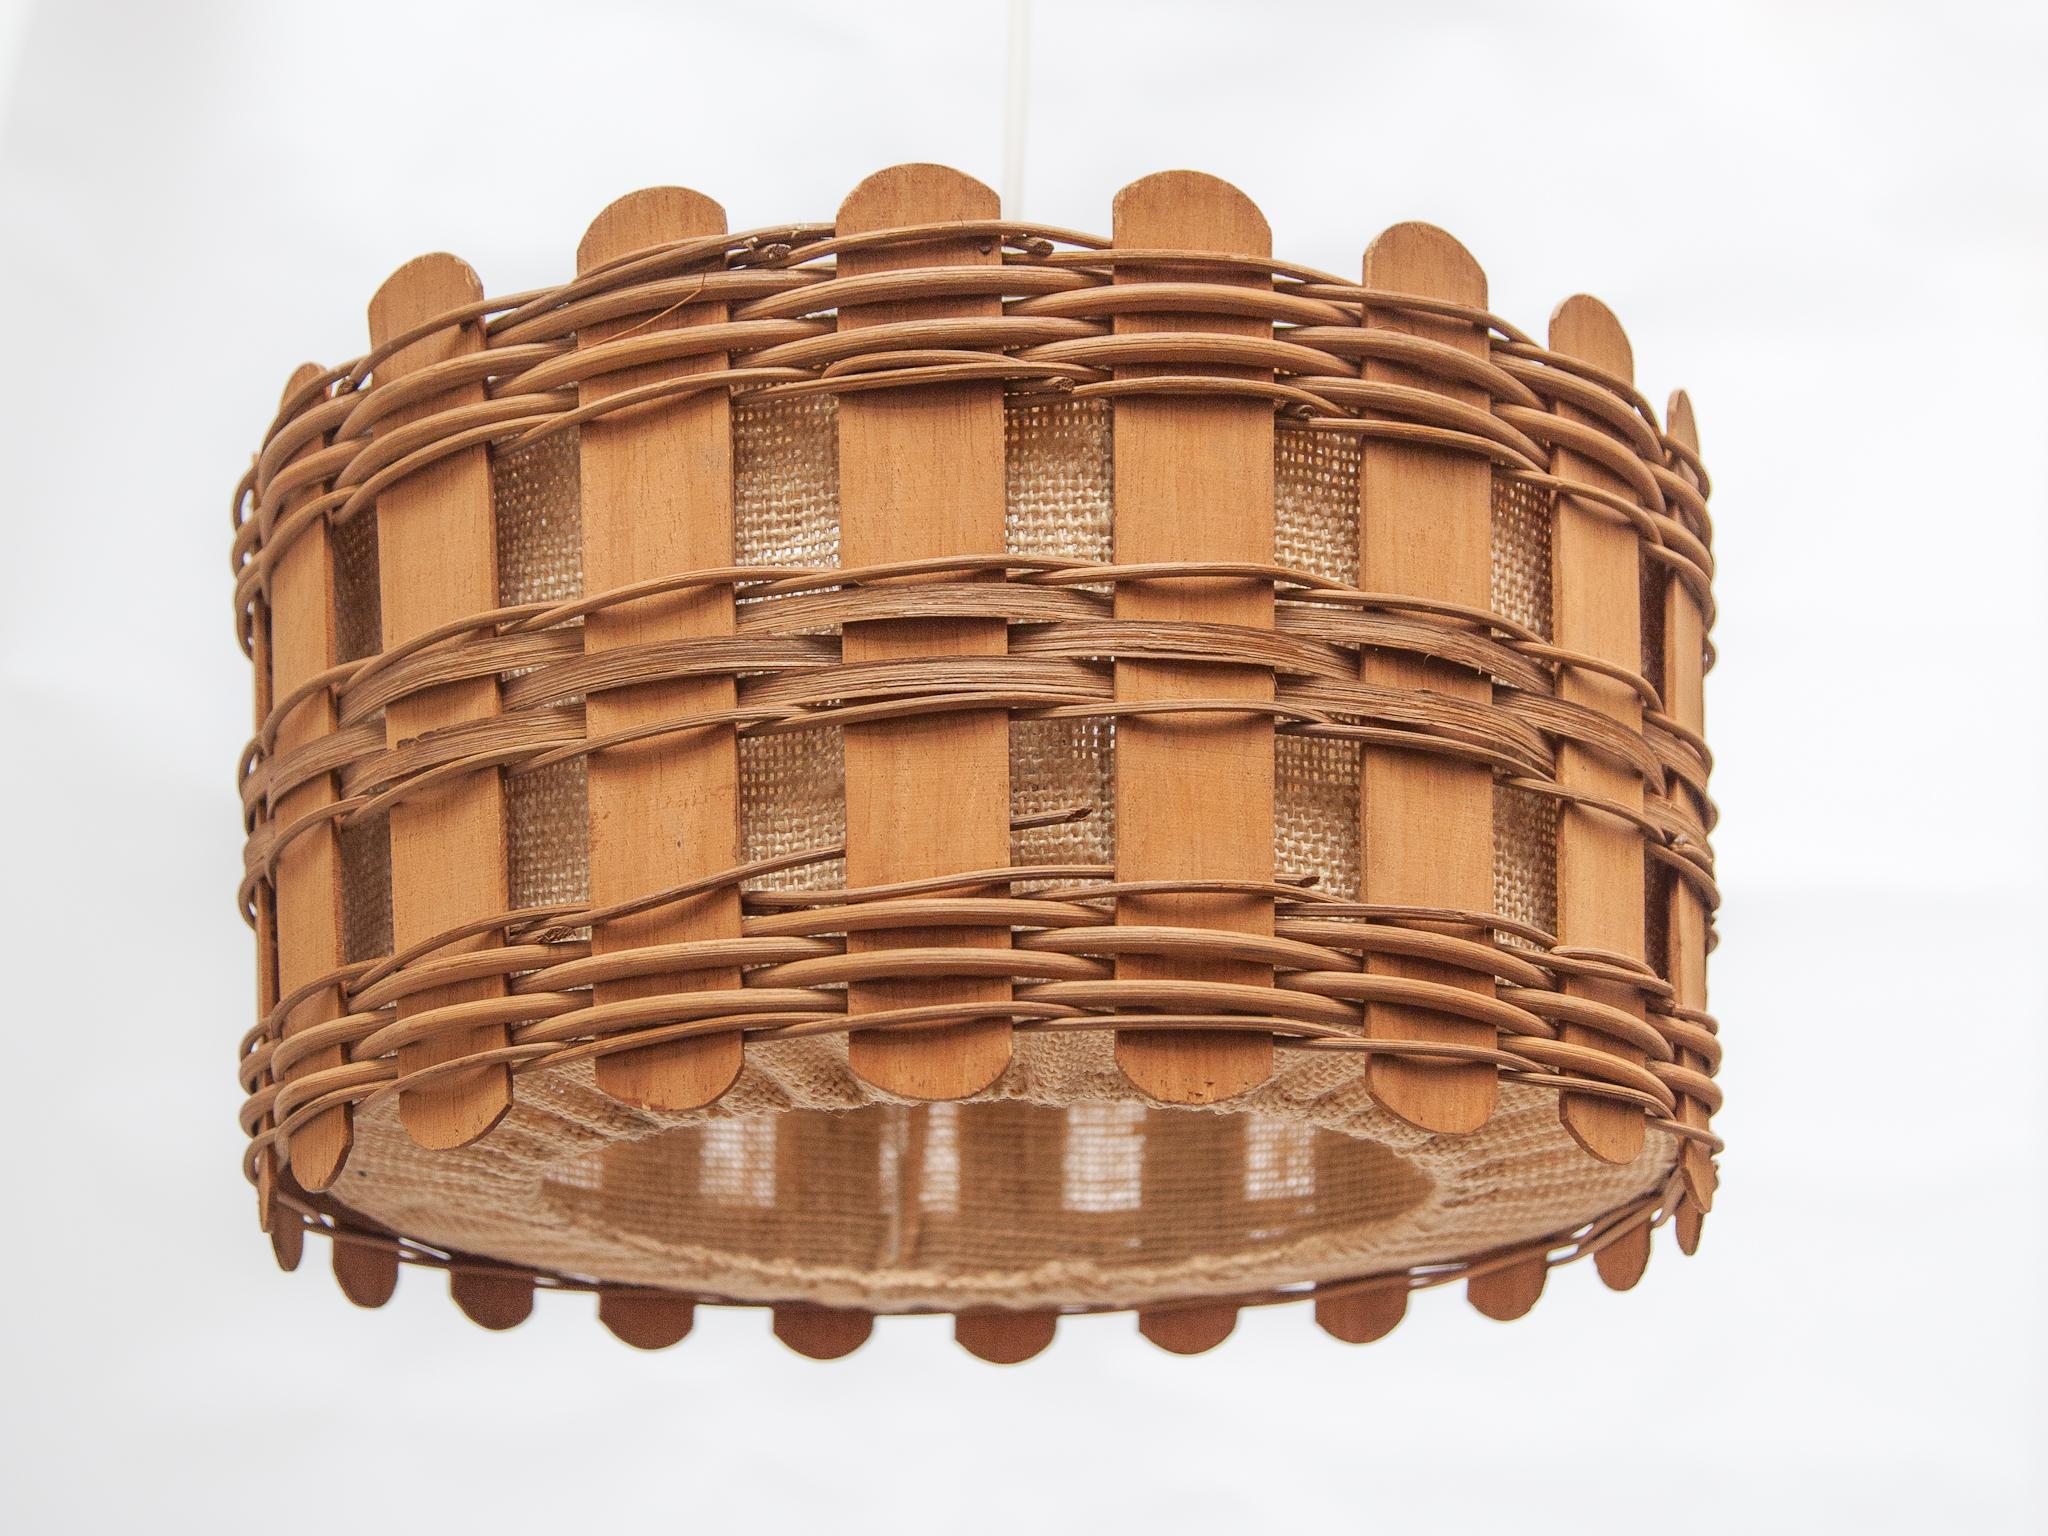 Runder Lampenschirm aus Teakholz und Jute mit Holzlatten und Stoff 1960er Jahre, entworfen von Massive Belgium.